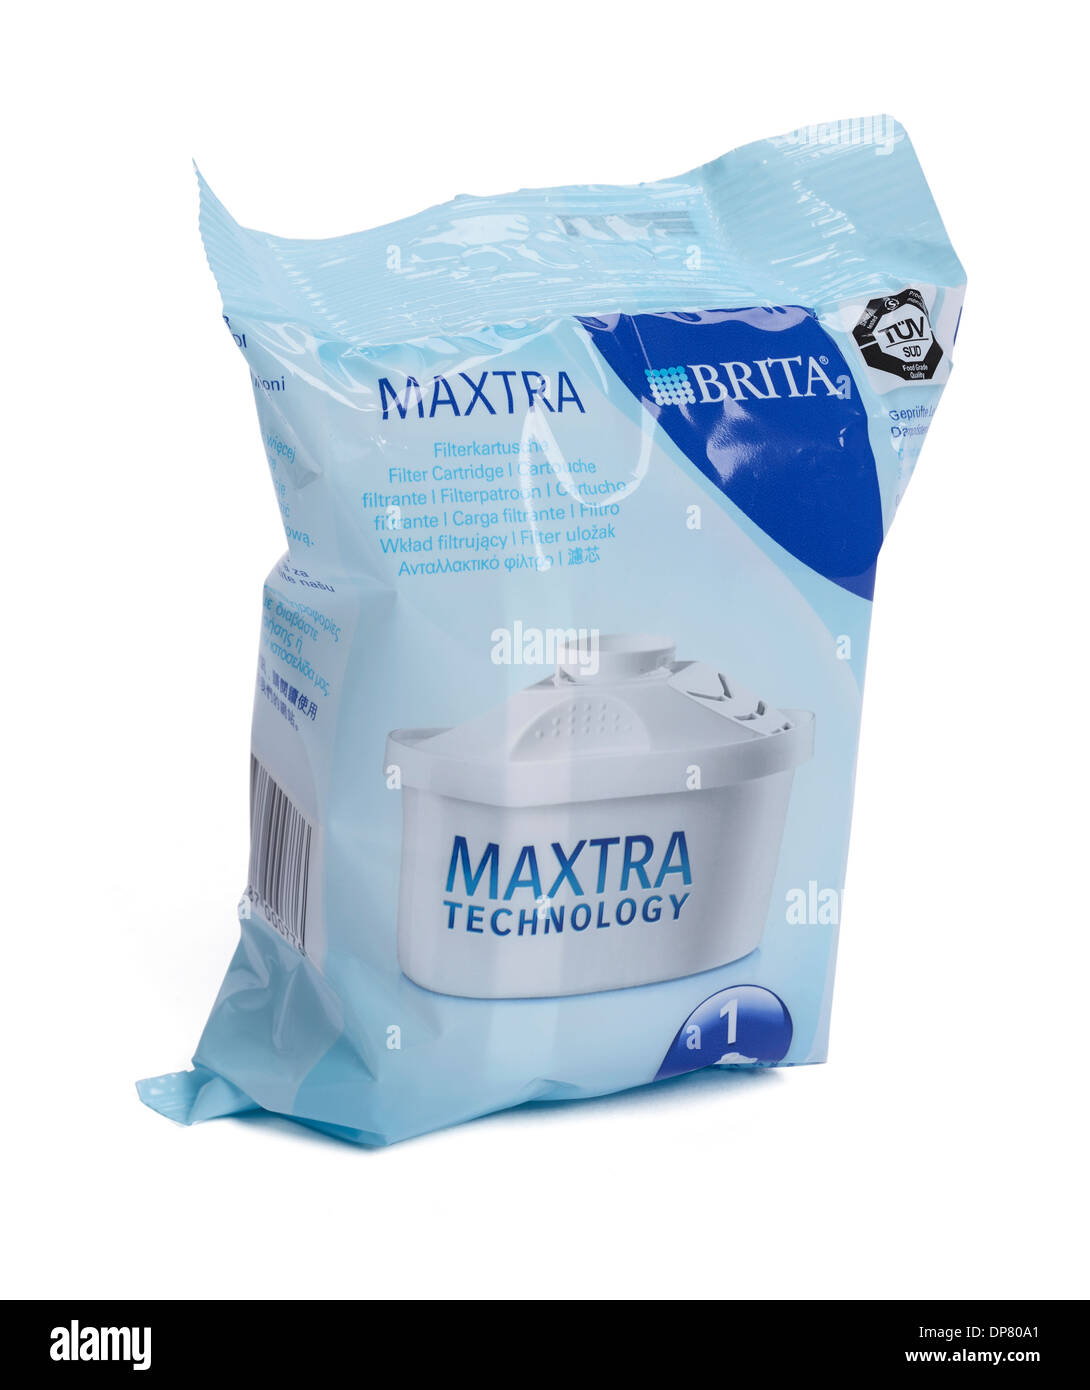 Eine Maxtra Filterkartusche für den Einsatz in einem Brita Wasser Filter Krug Stockfoto